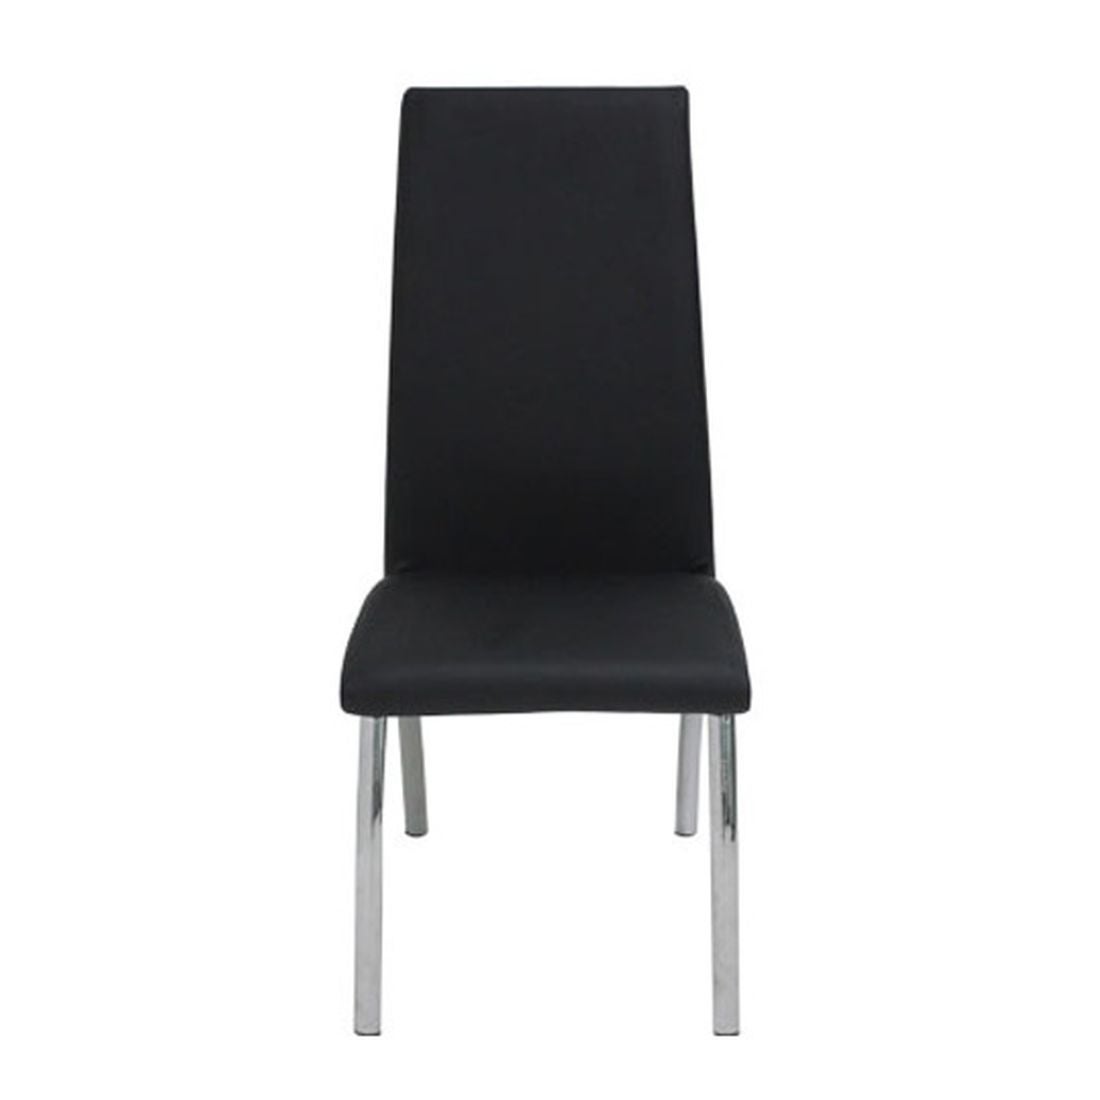 เก้าอี้ทานอาหาร เก้าอี้เหล็กเบาะหนัง รุ่น Step-SB Design Square